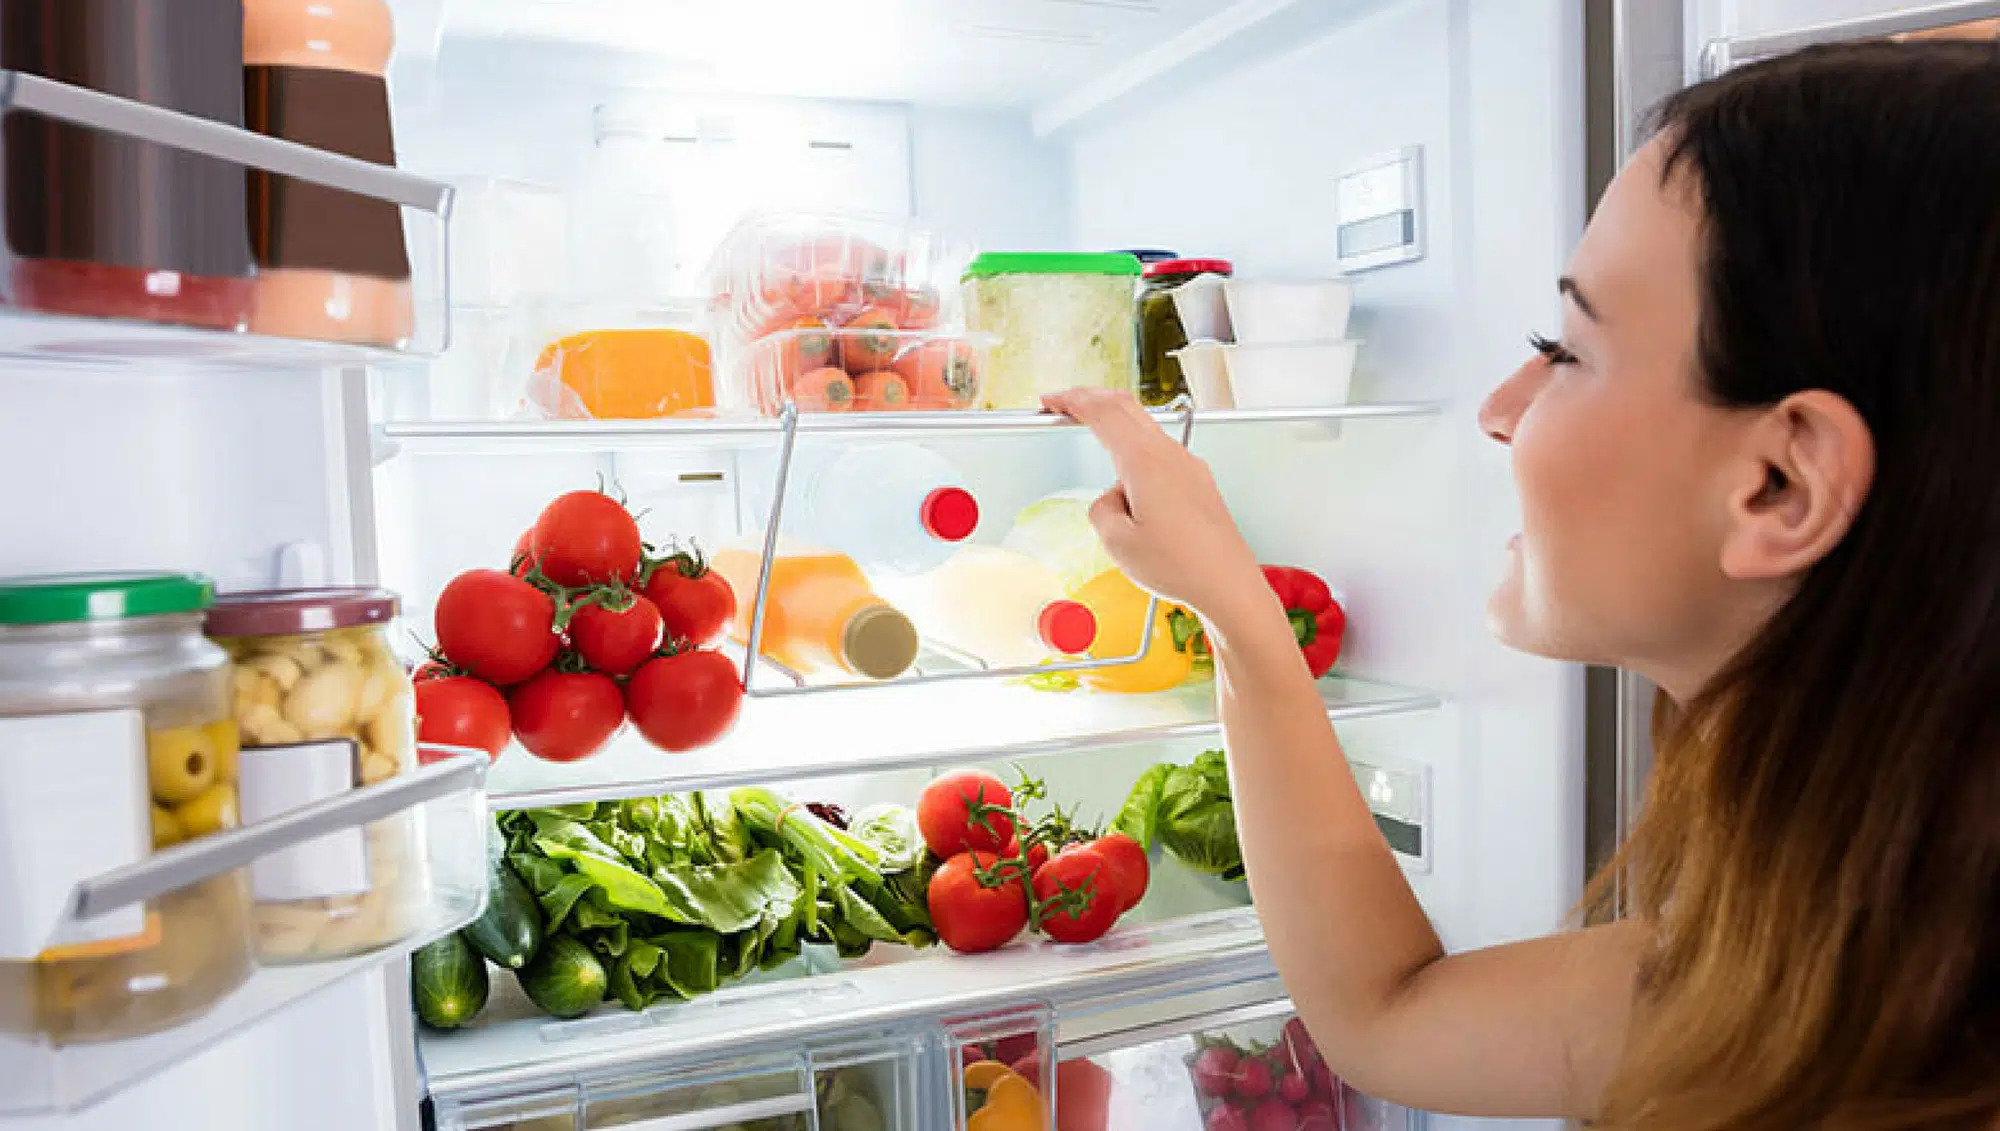 Một số chú ý bảo quản thực phẩm trong tủ lạnh